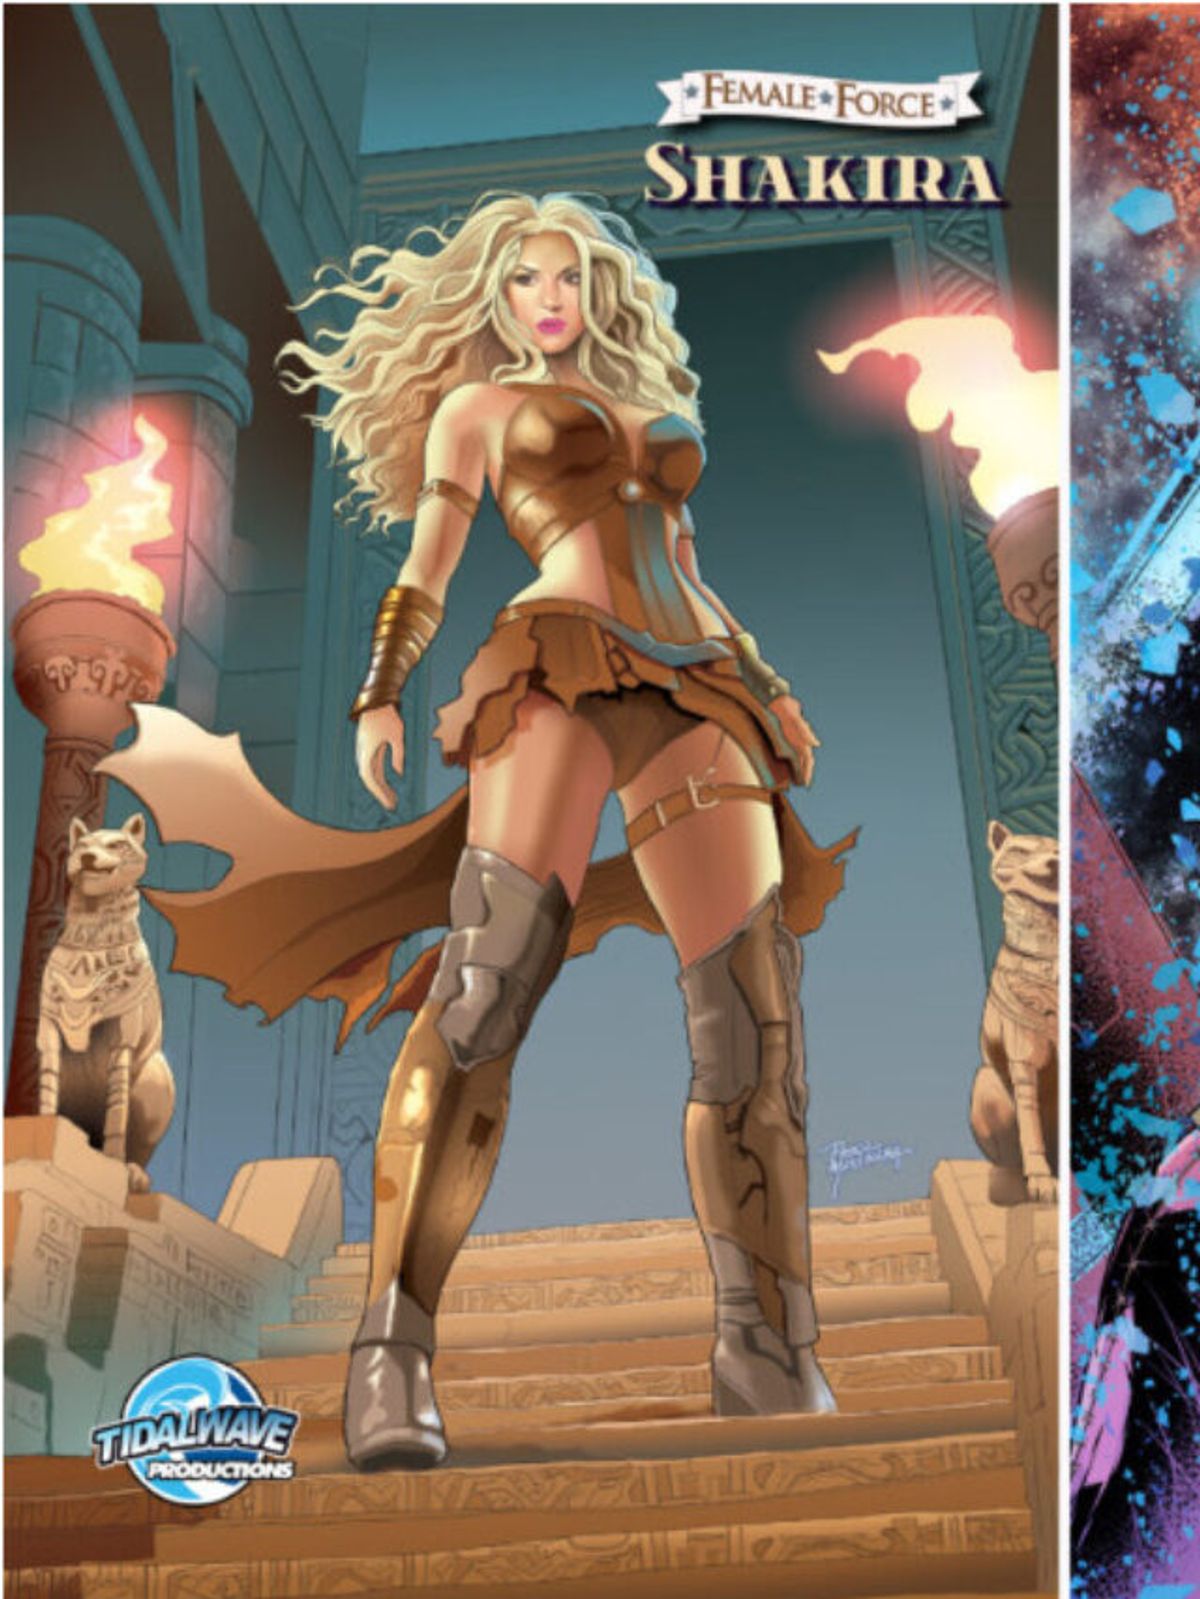 TidalWave Comics lanza nueva entrega de su serie ‘Fuerza Femenina’ dedicada a Shakira